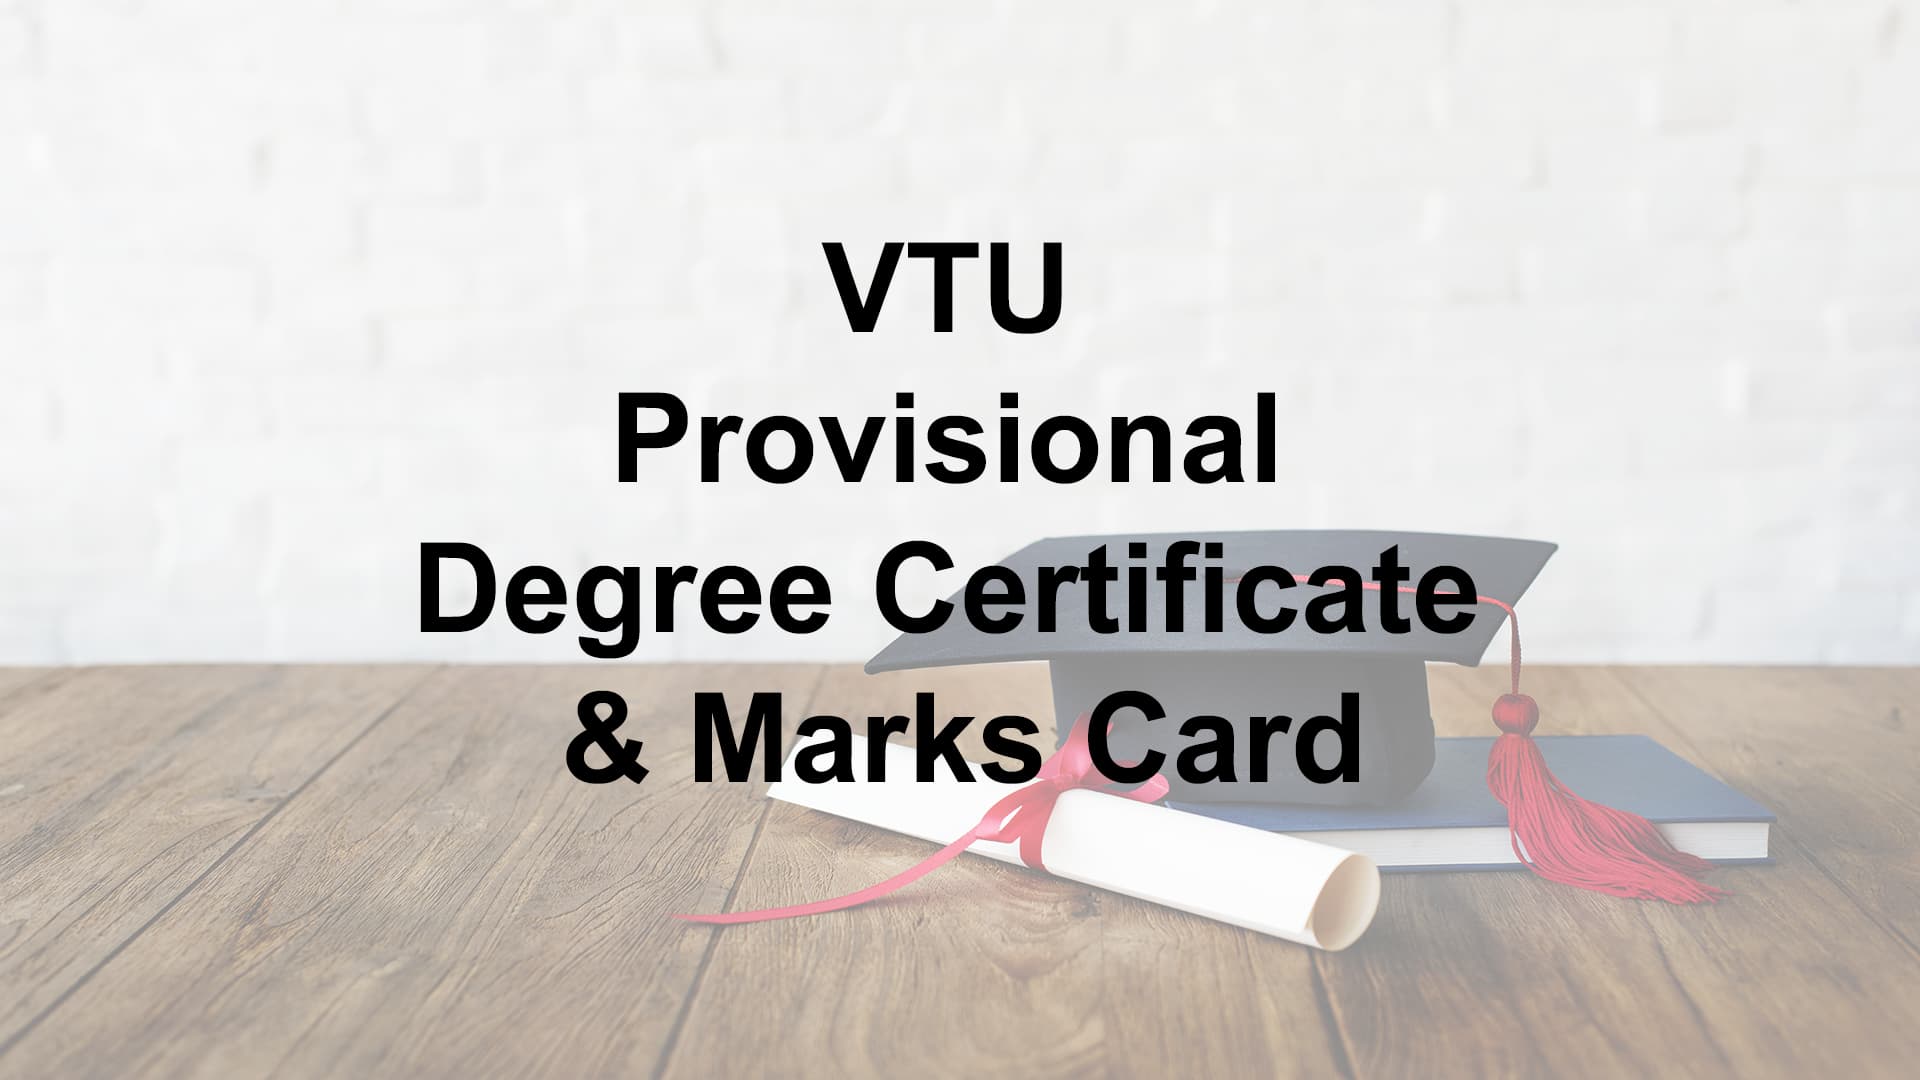 VTU provisional Degree Certificate & Marks Card